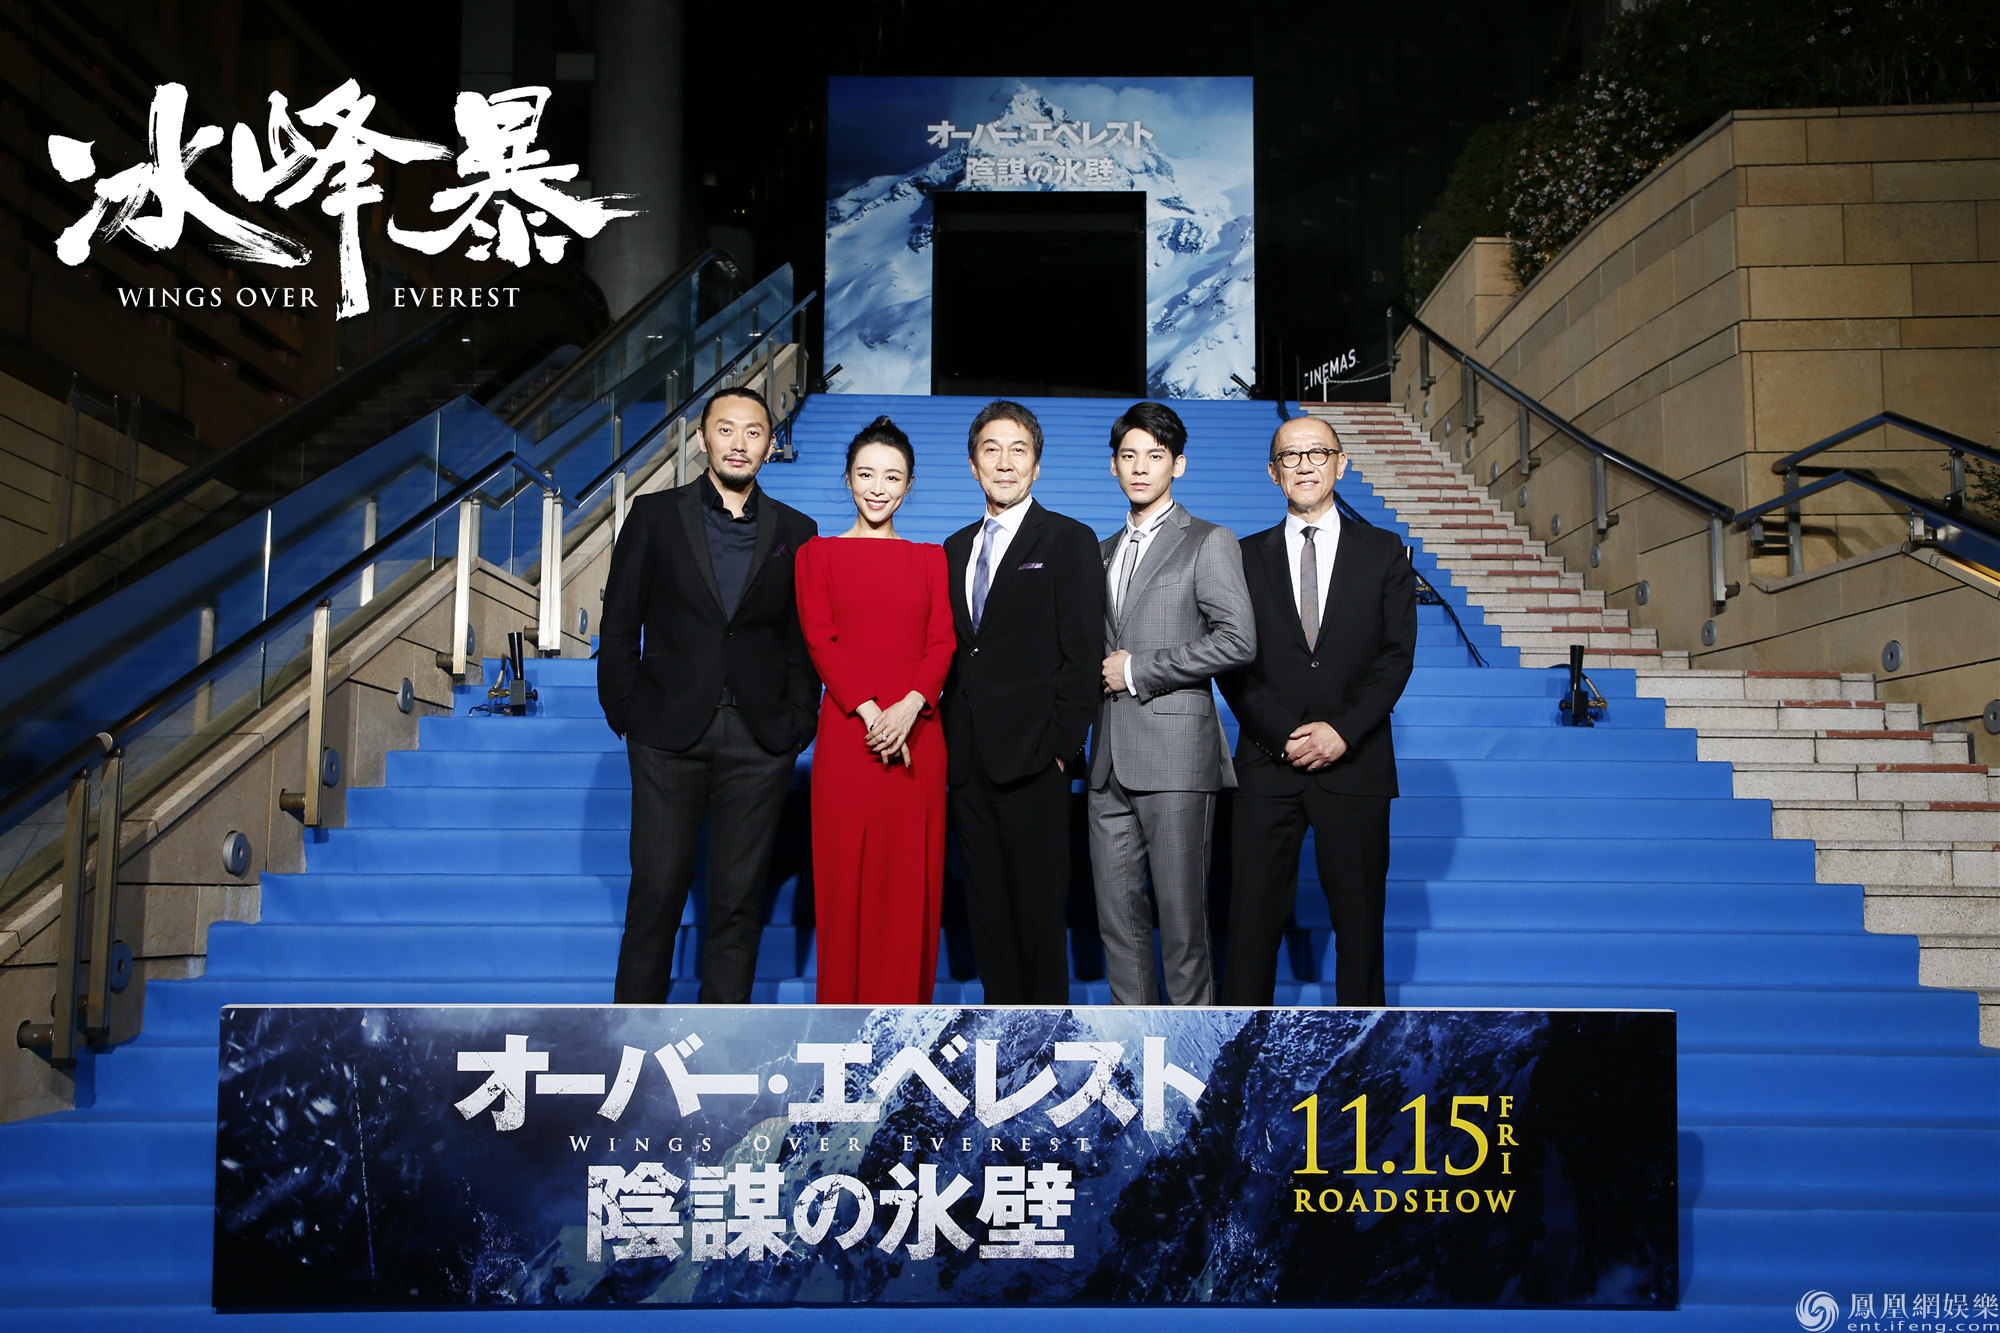 冰峰暴东京国际电影节全球首映日本首波口碑炸裂